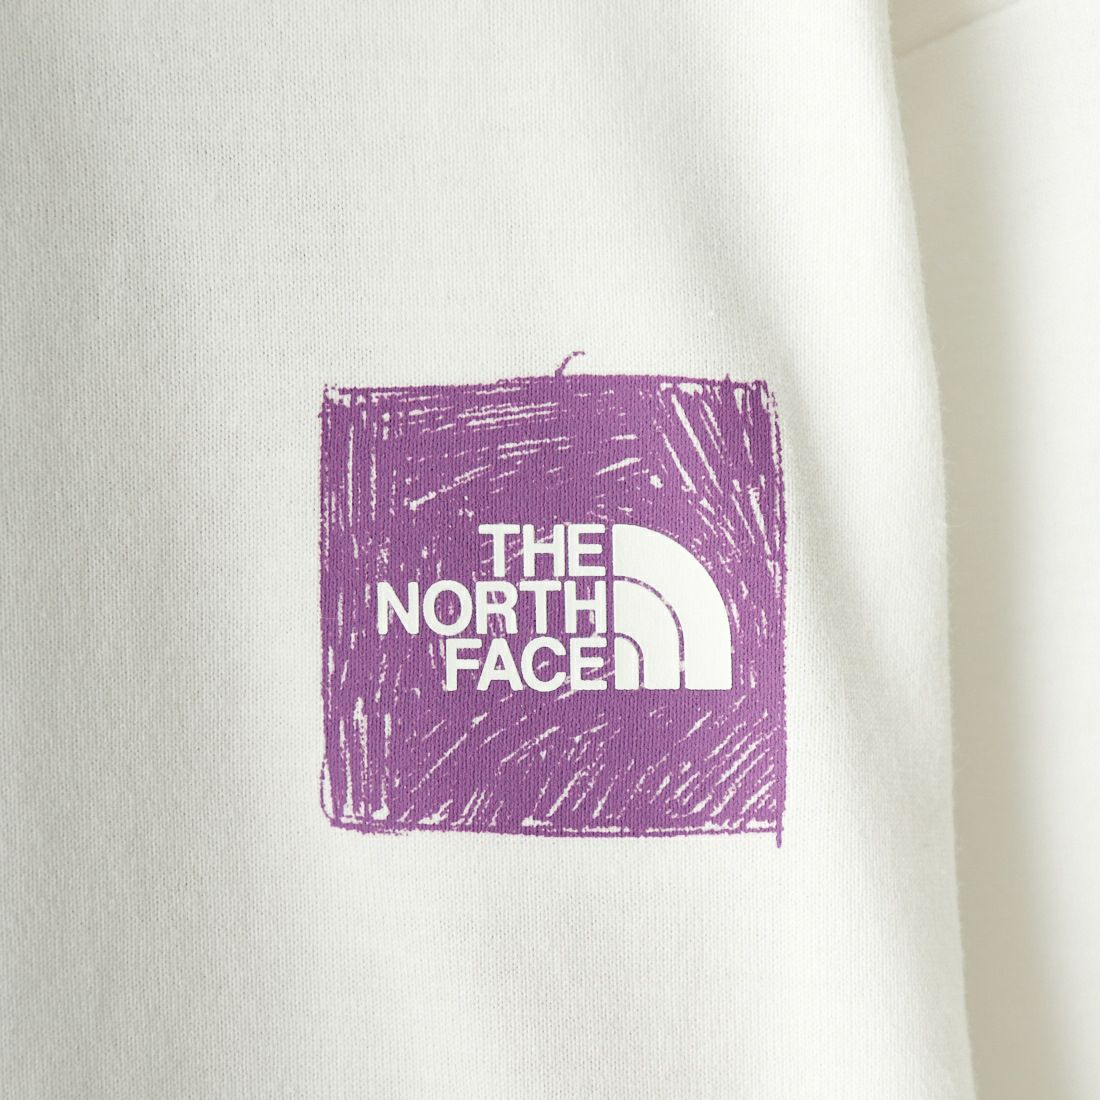 THE NORTH FACE [ザ ノースフェイス] ロングスリーブグラフィックTシャツ [NTJ32334] WW